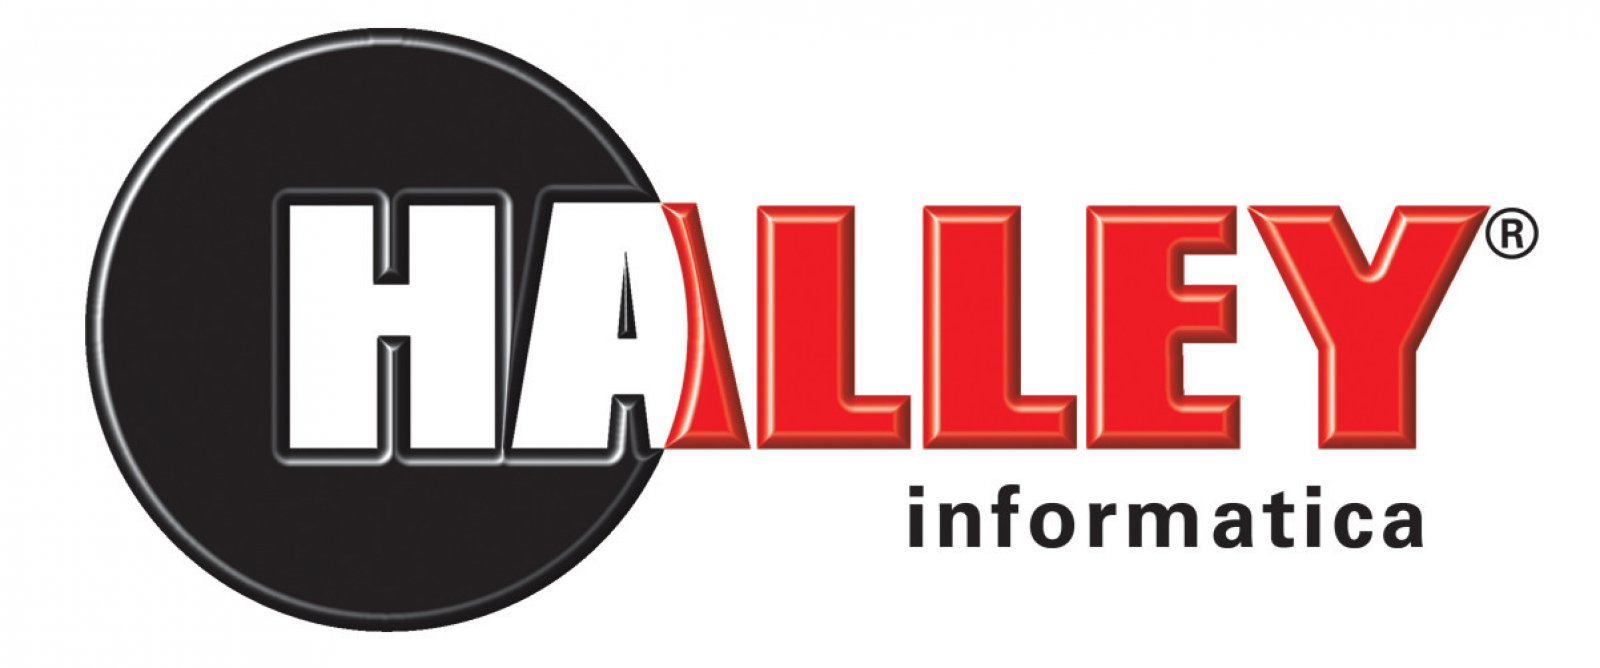 Logo Halley Informatica